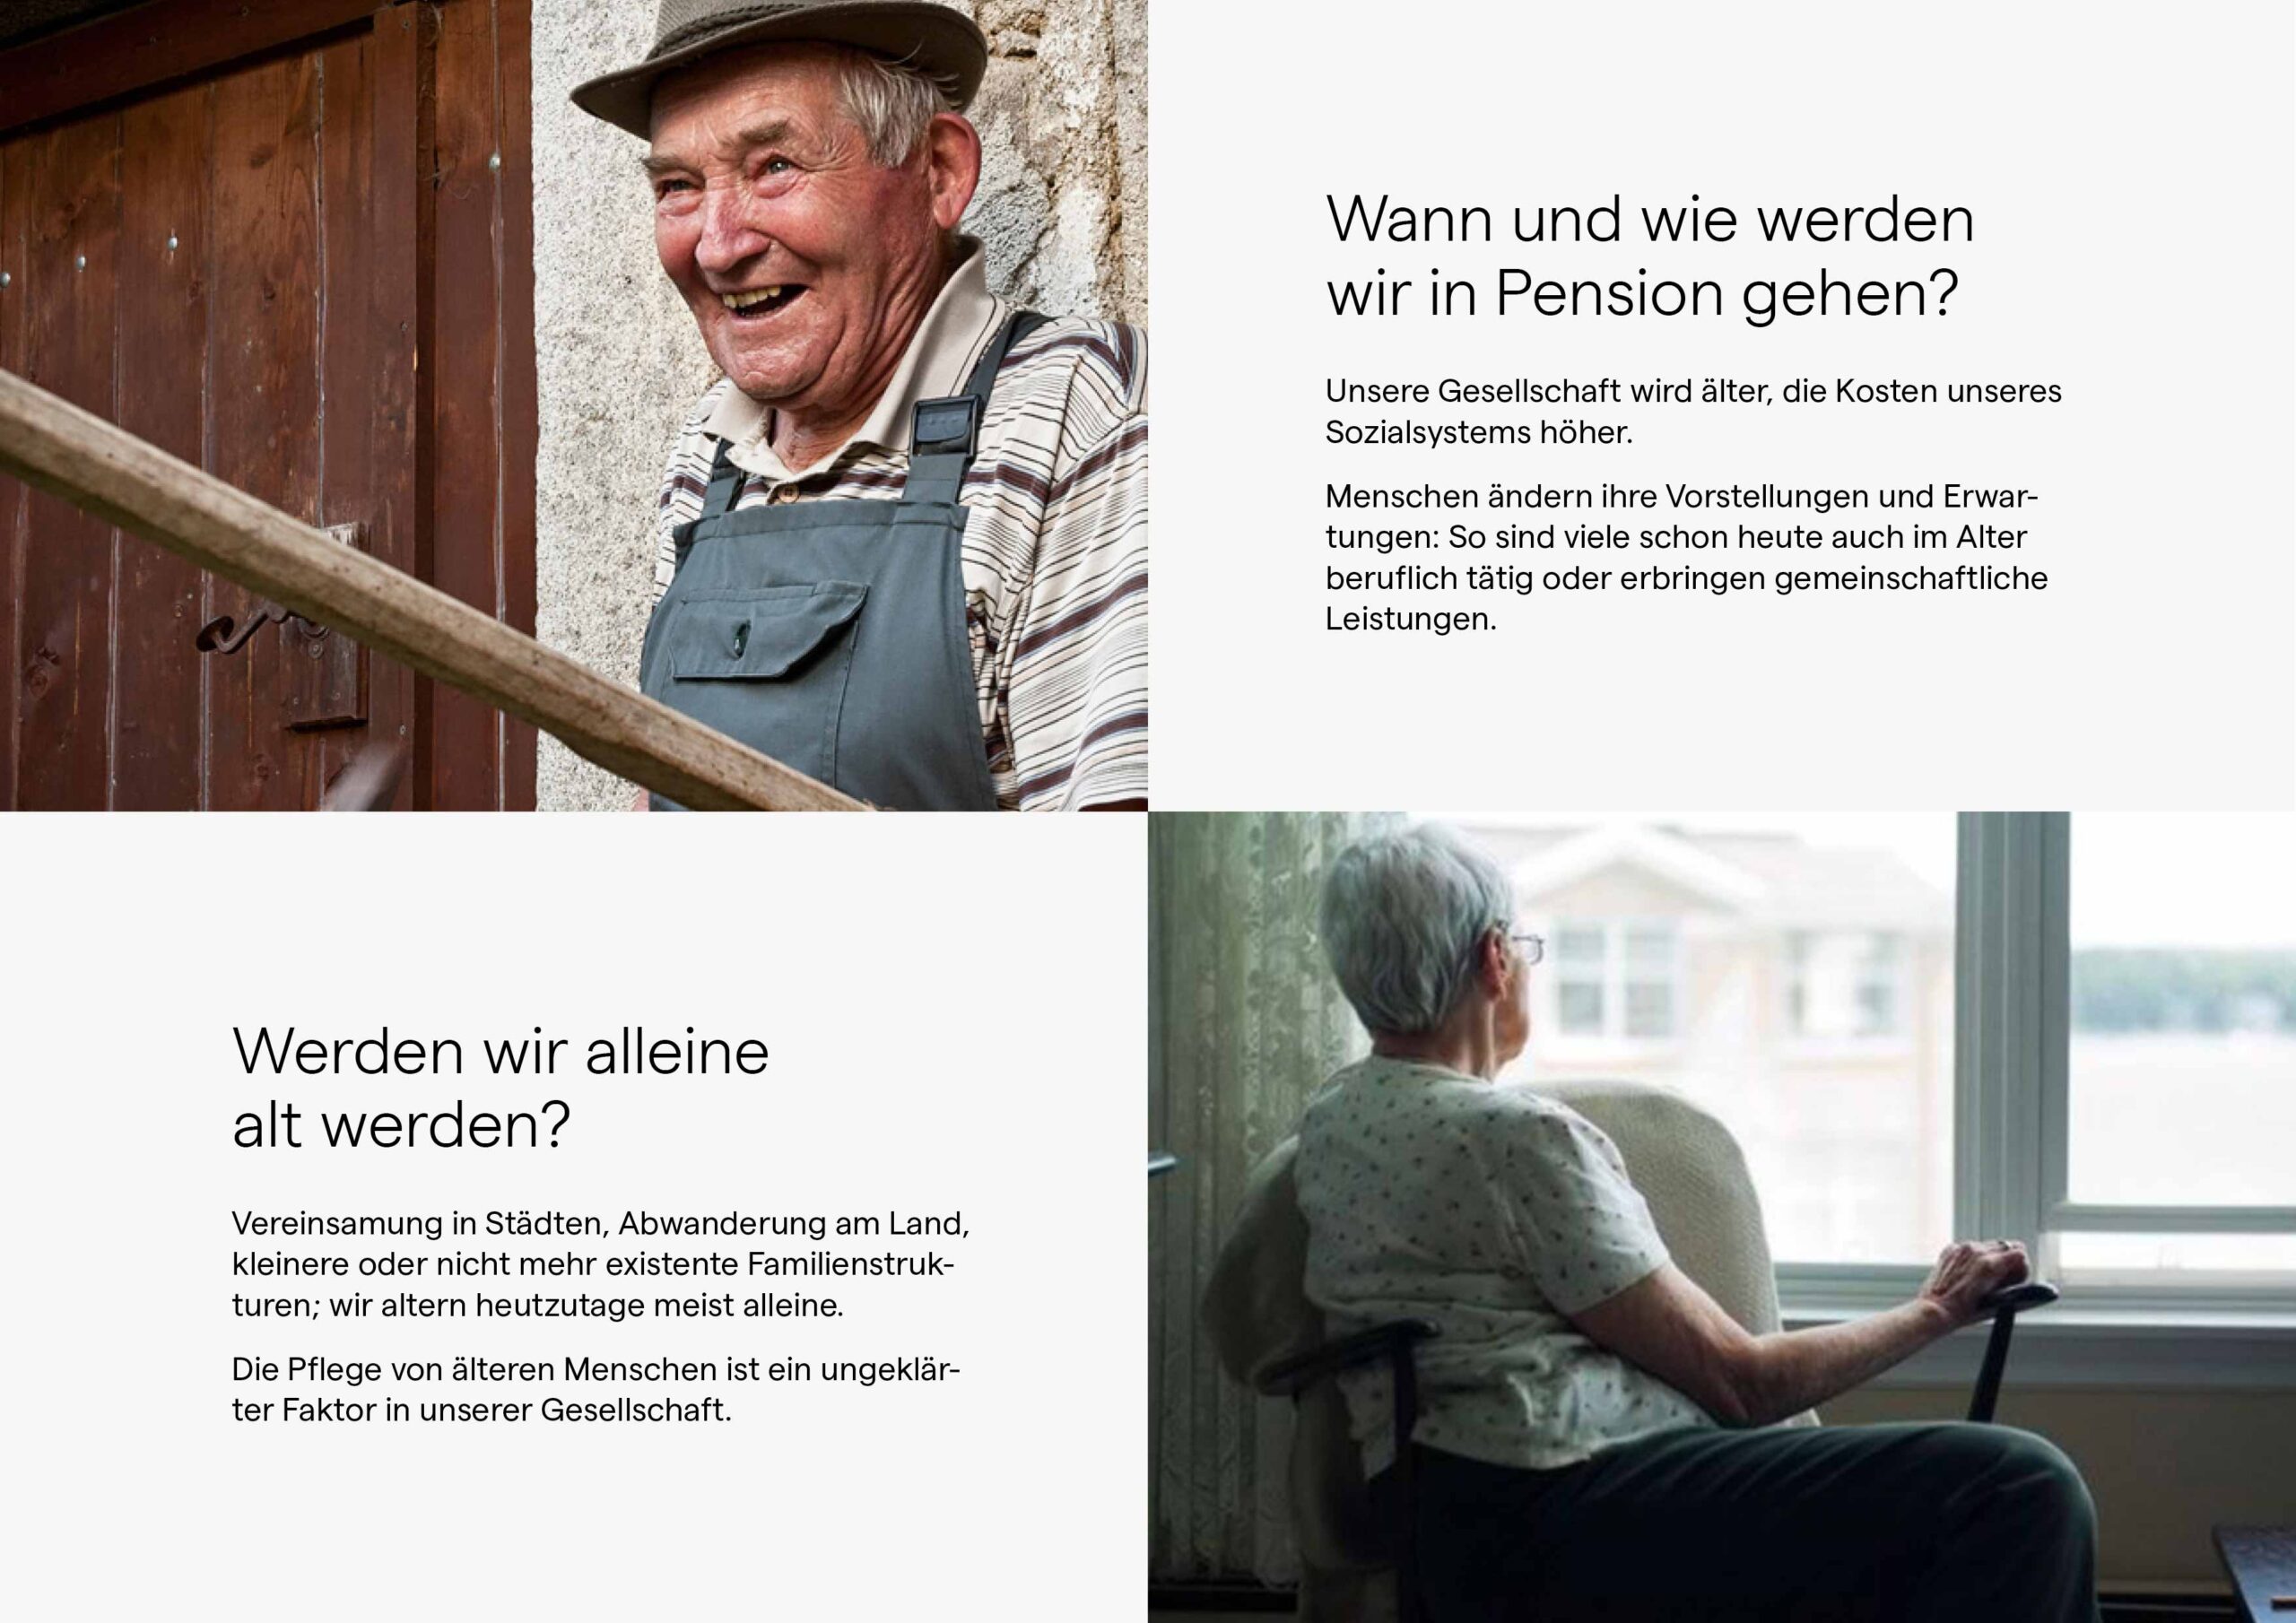 Dieses Bild zeigt zwei globale Trends: "Wann und wie werden wir in Pension gehen?" und "Werden wir alleine alt werden?"